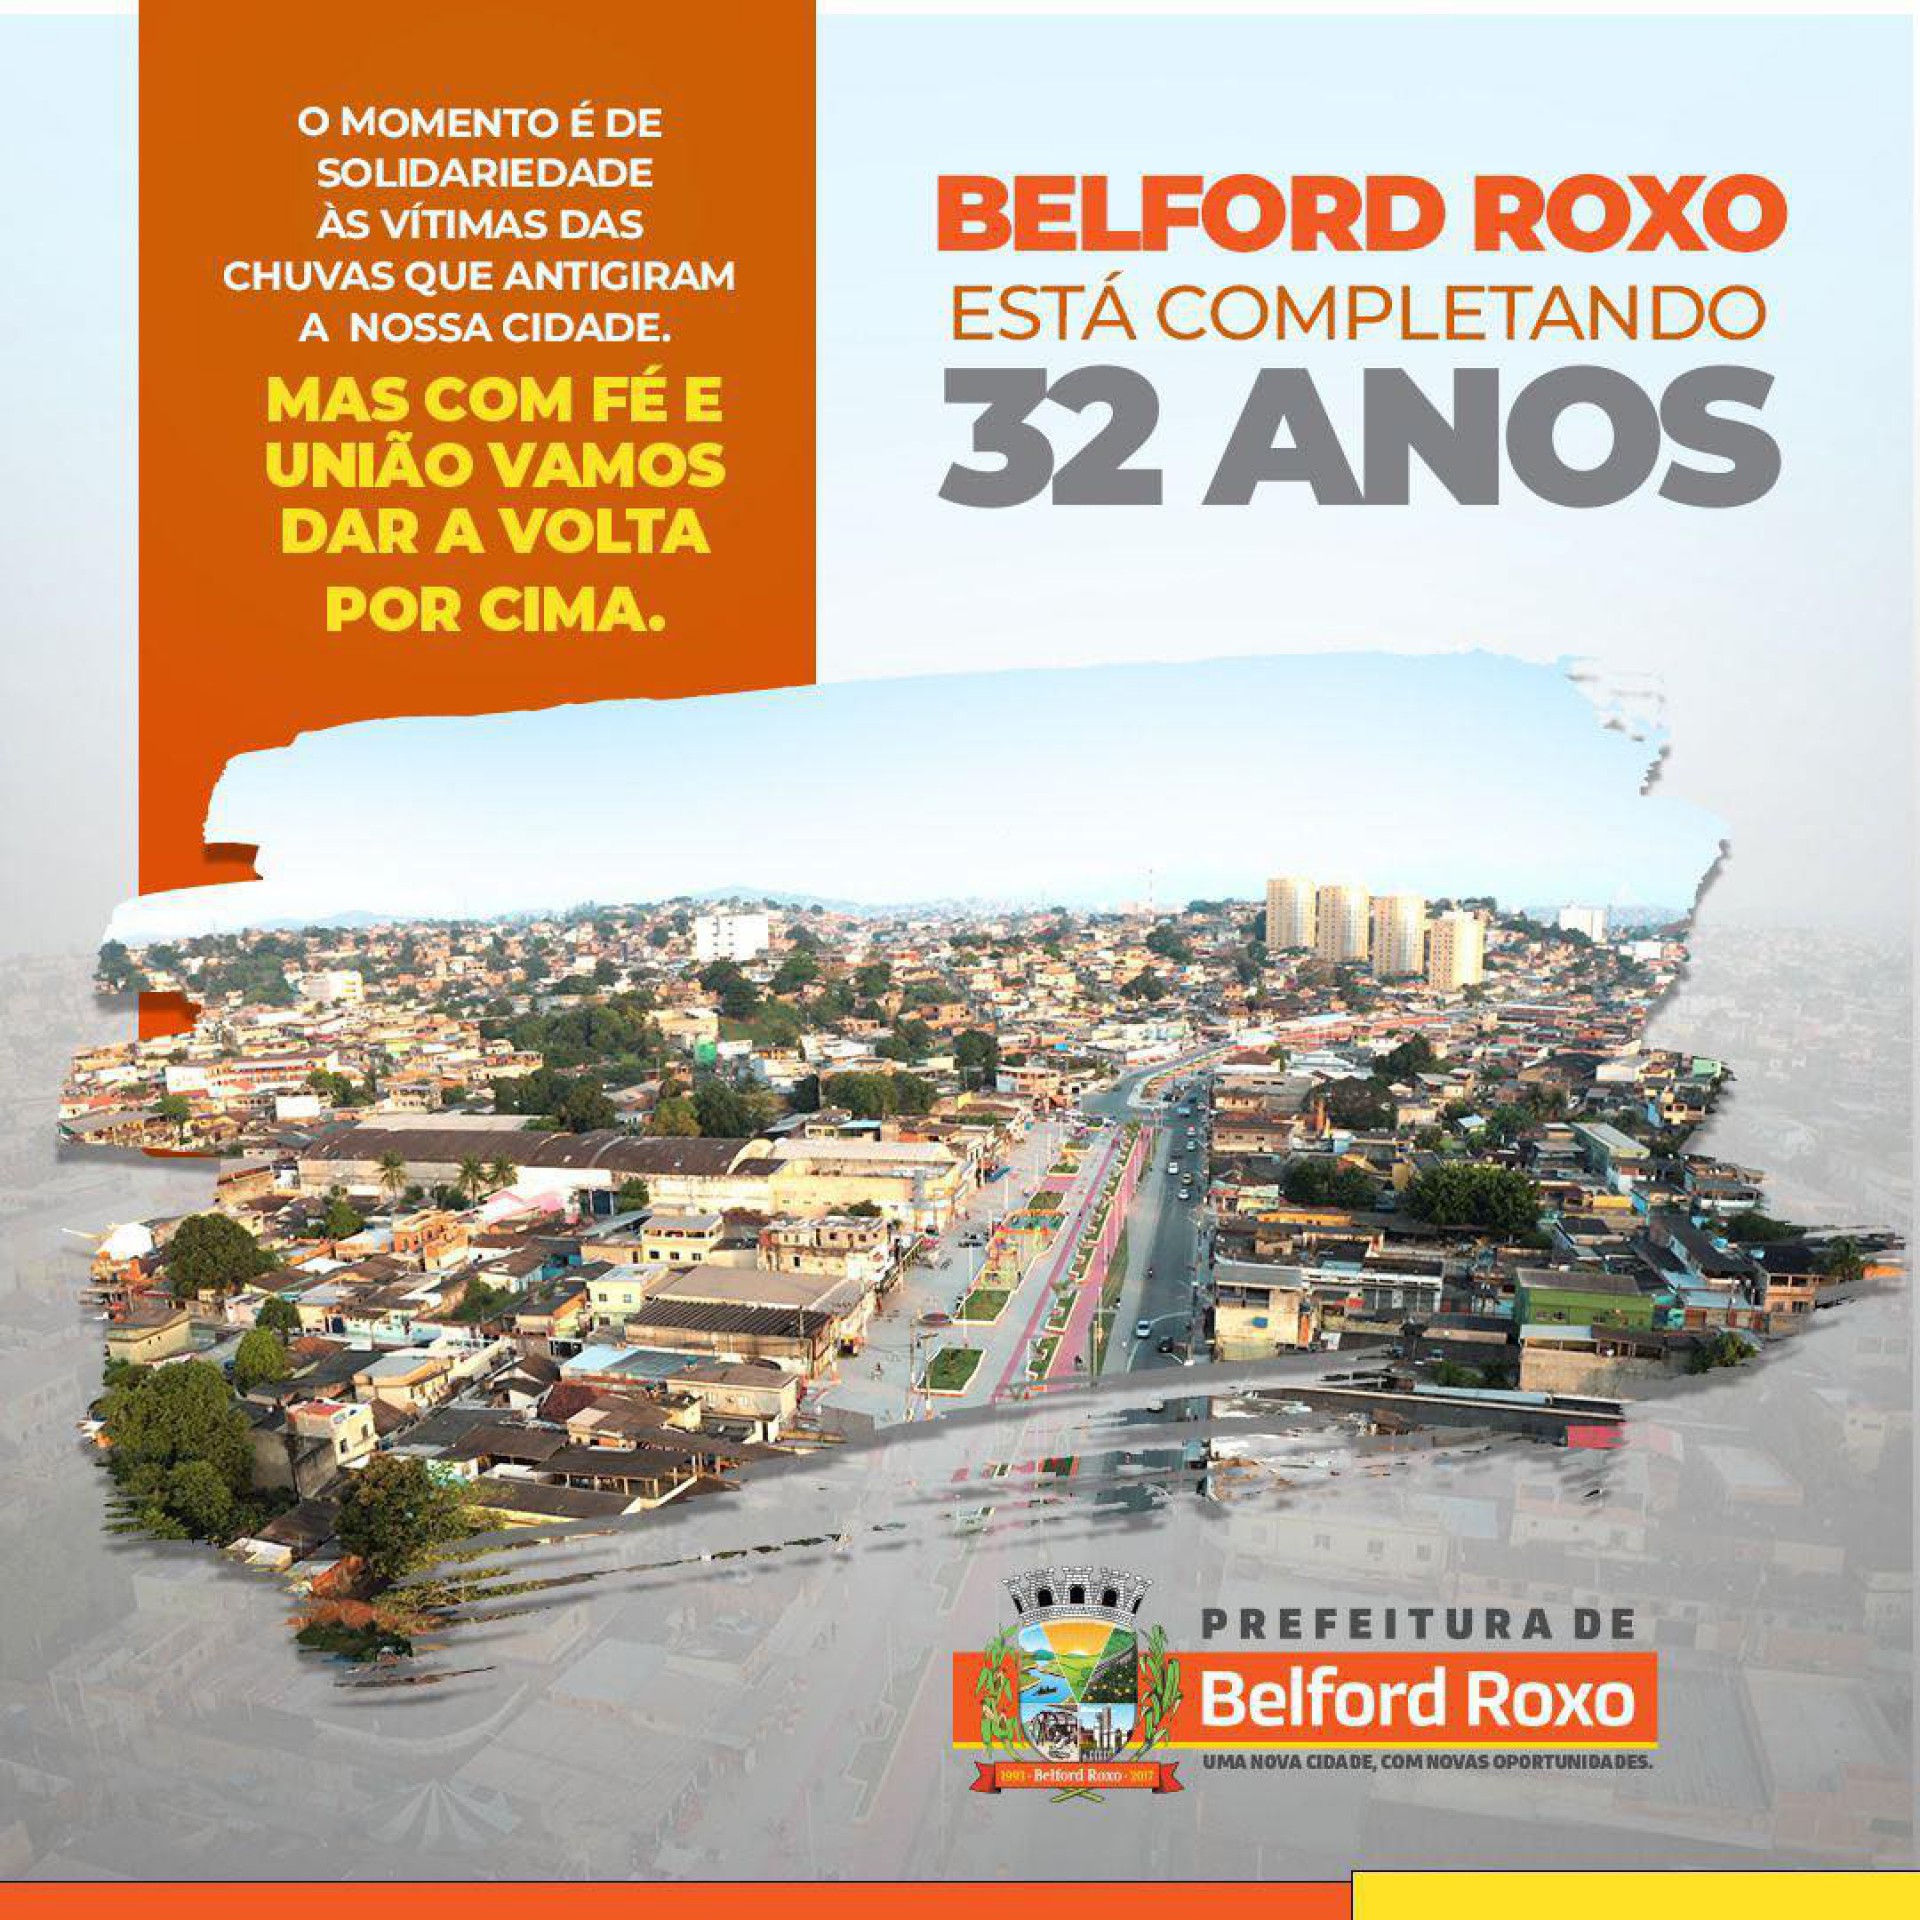 A Prefeitura de Belford Roxo lembrou em suas redes sociais os 32 anos da cidade em momento de apoio e solidariedade - Divulgação / PMBR